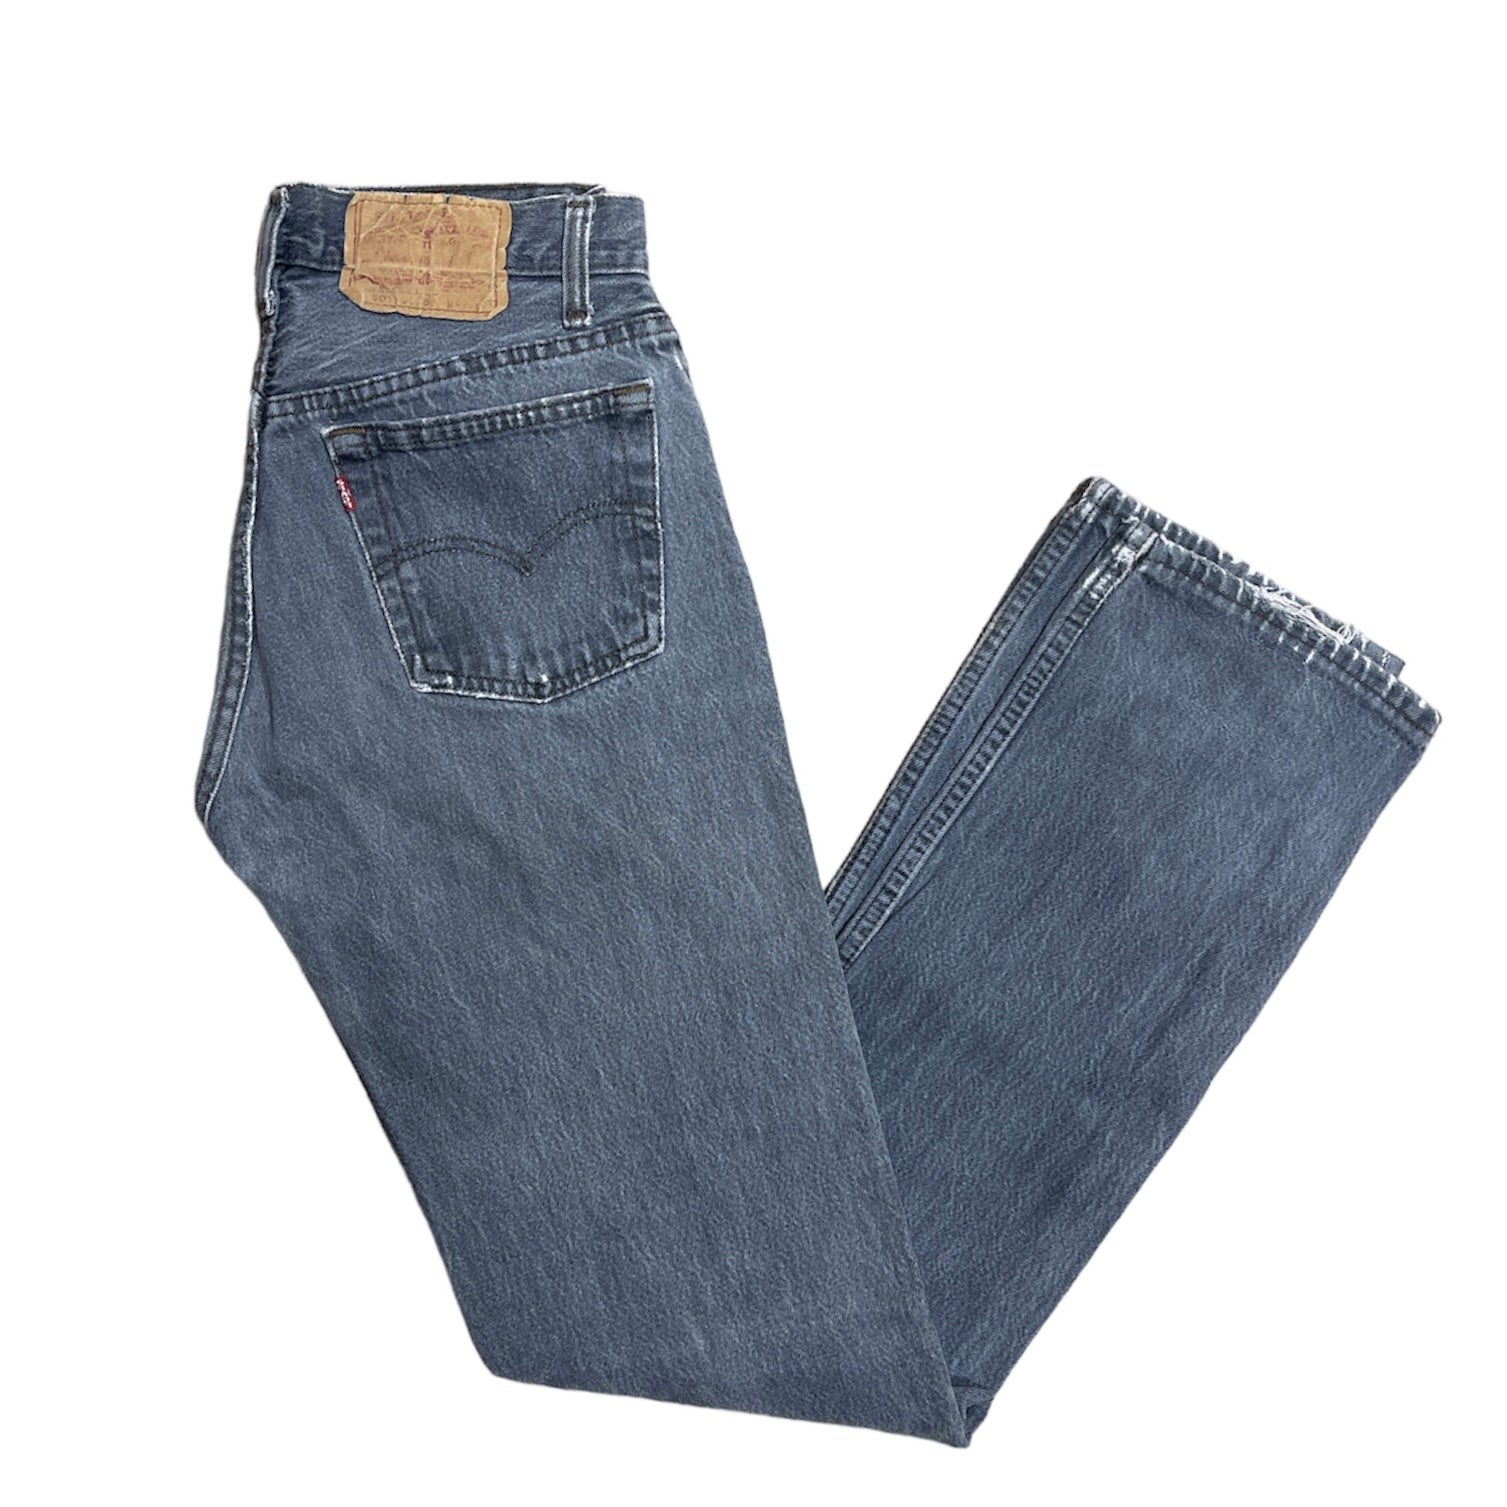 Vintage Levis 501 Grey Jeans (W28/L34)